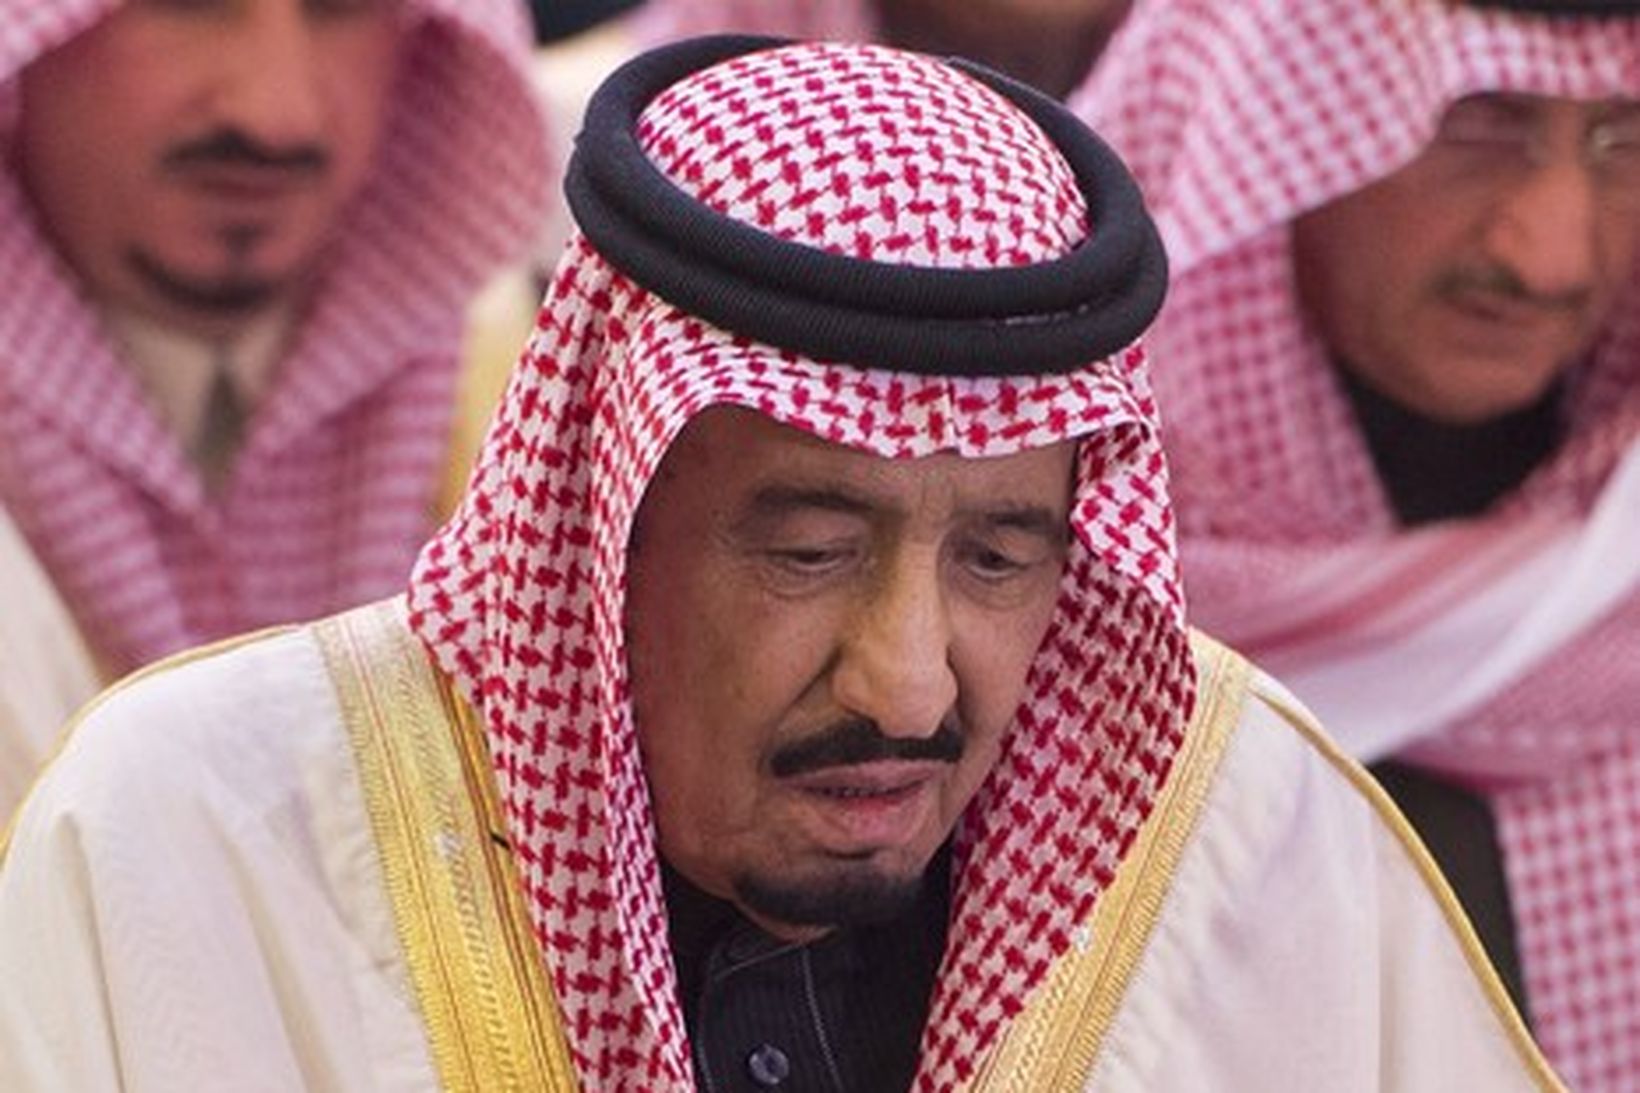 Salman bin Abdulaziz al Saud, nýr konungur Sádí-Arabíu.